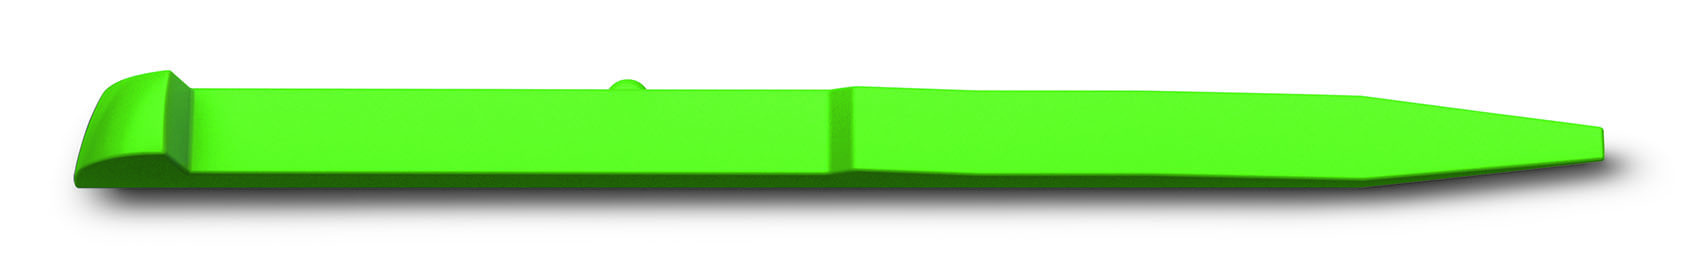 Зубочистка для ножей Victorinox (A.3641.4) зеленый